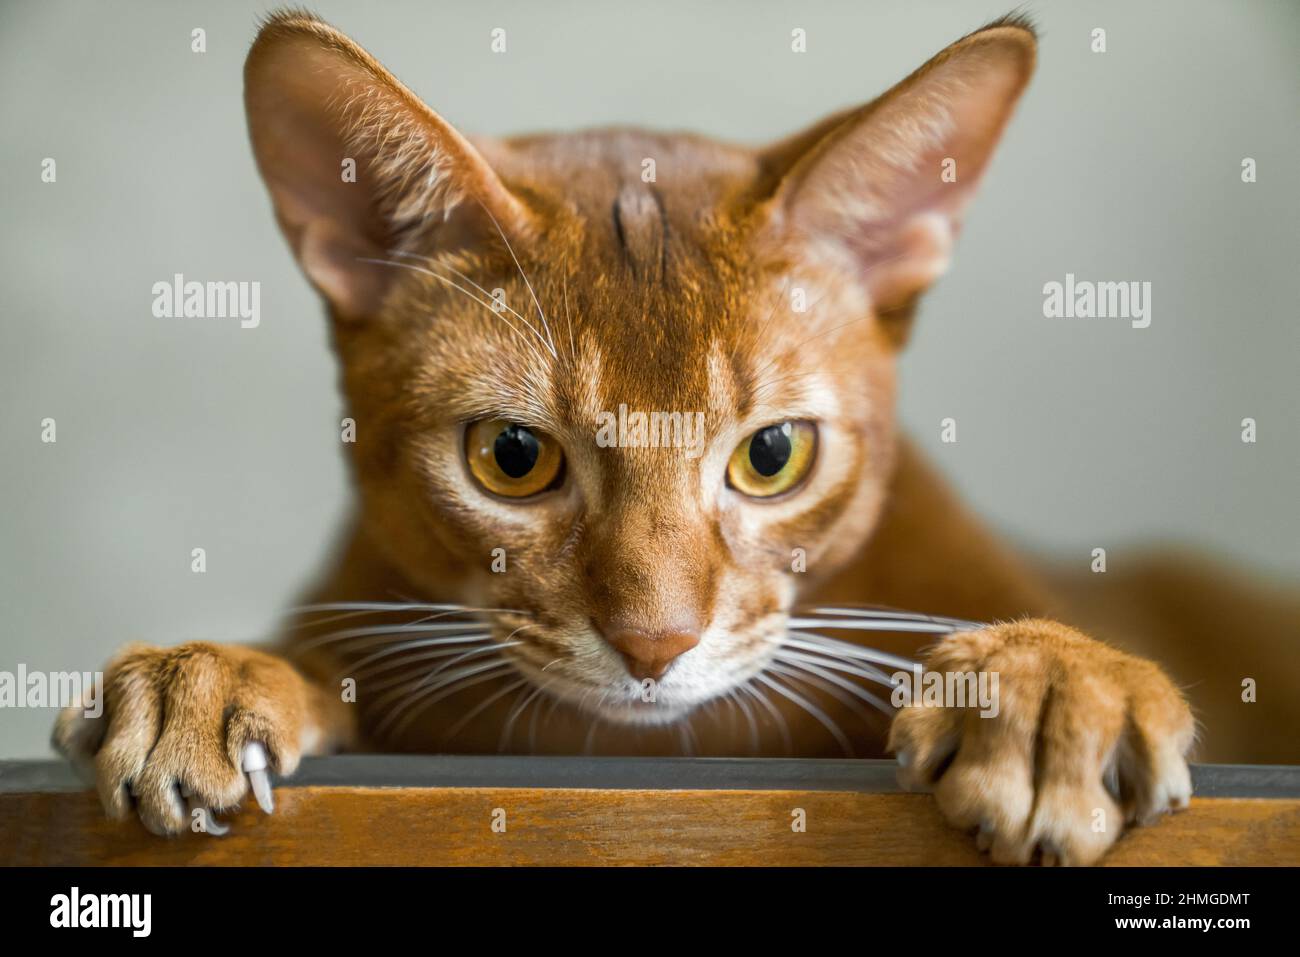 Gatto rosso di razza abissiniana si trova sulla sedia e guarda in macchina fotografica, muso e zampe primo piano Foto Stock